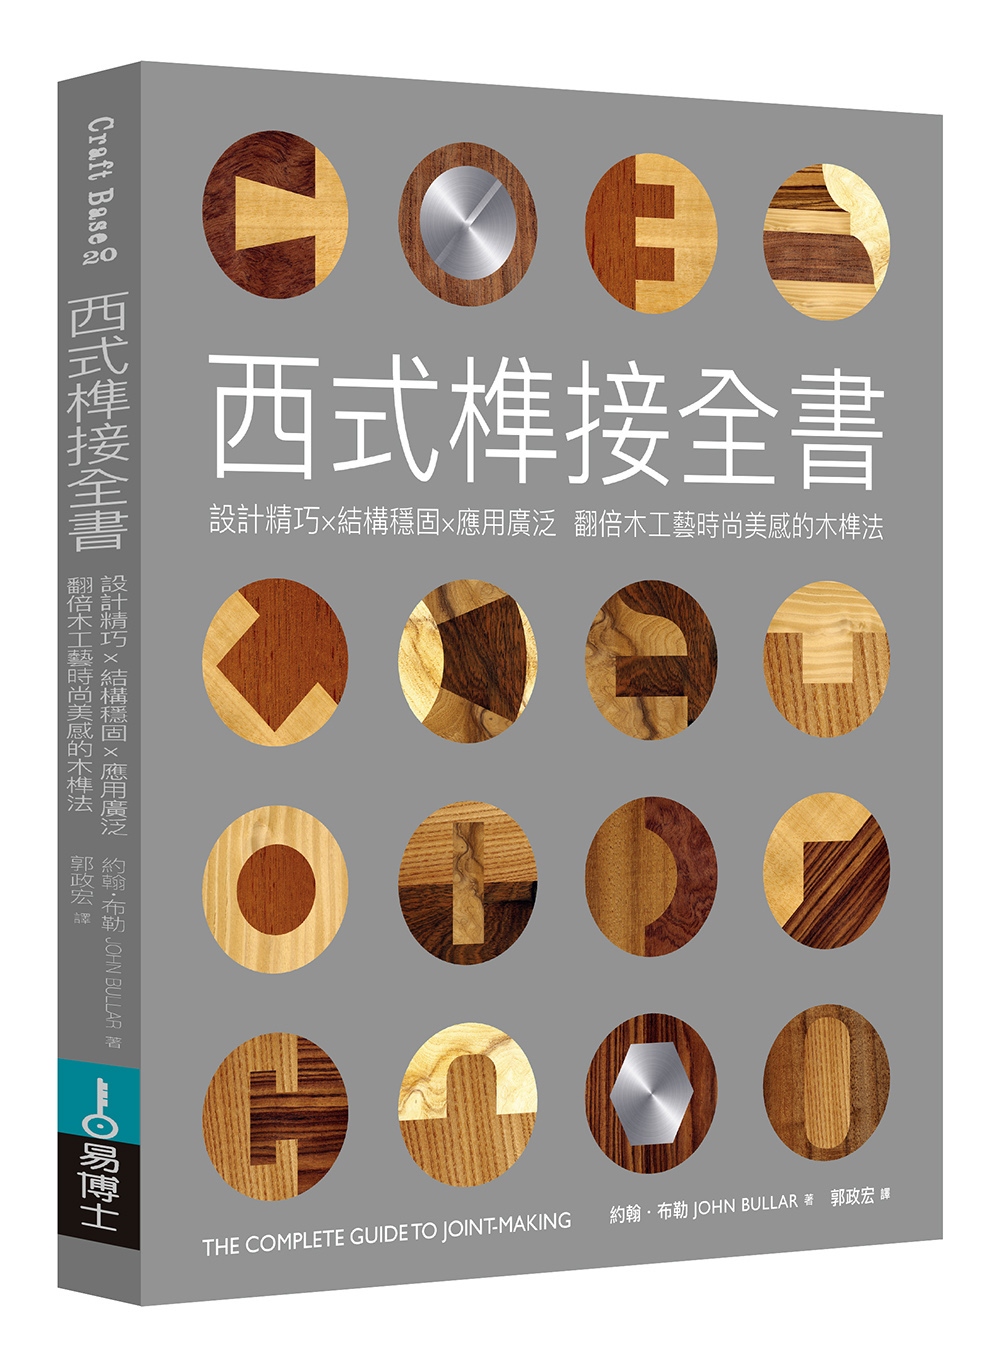 西式榫接全書：設計精巧╳結構穩固╳應用廣泛 翻倍木工藝時尚美感的木榫法